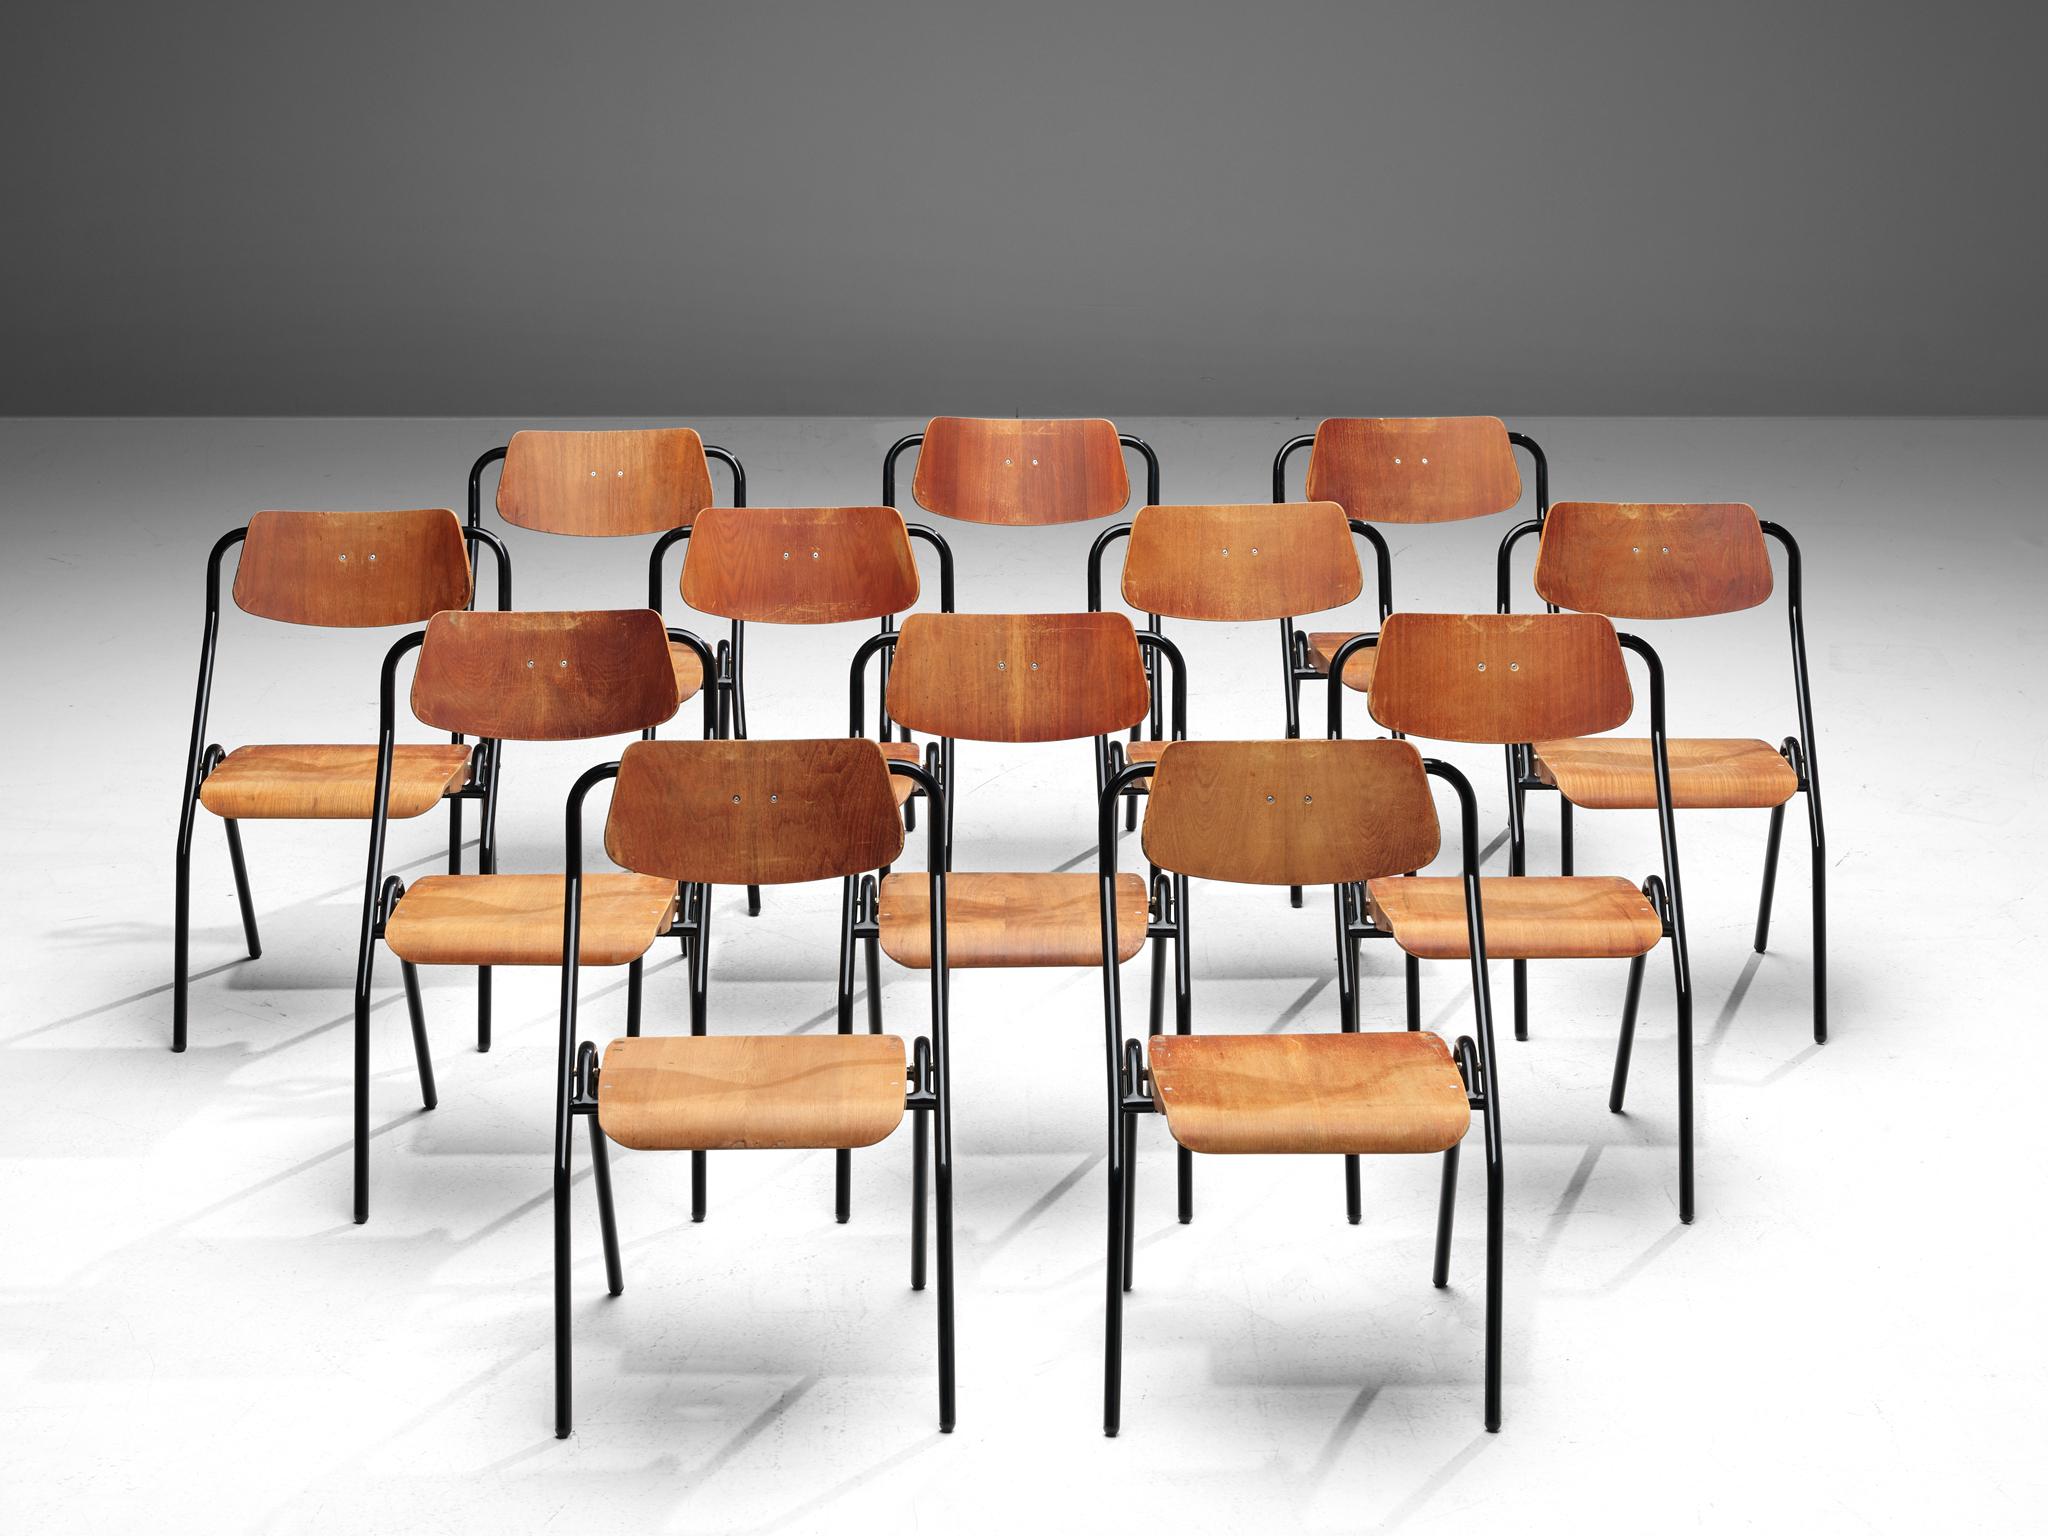 Klappbare Stühle, lackiertes Metall und Sperrholz, Niederlande, ca. 1930

Dieses sehr große Set von Stühlen der holländischen Schule aus der Mitte des letzten Jahrhunderts wäre eine gute Wahl für Ihr Projekt, wenn Sie Stühle suchen, die leicht zu